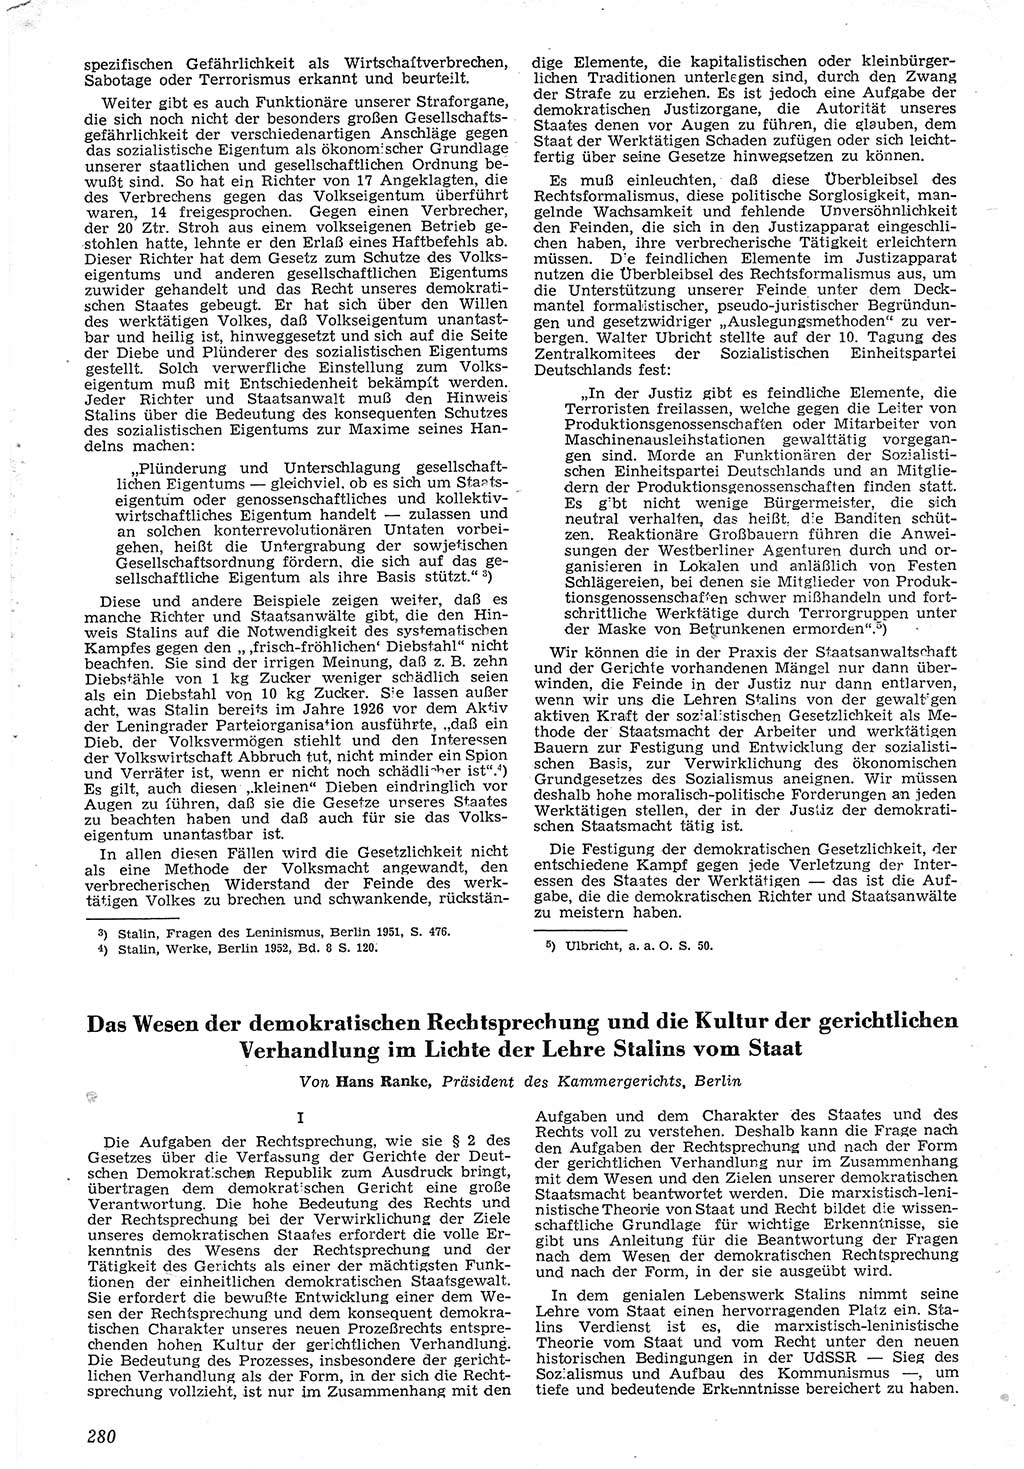 Neue Justiz (NJ), Zeitschrift für Recht und Rechtswissenschaft [Deutsche Demokratische Republik (DDR)], 7. Jahrgang 1953, Seite 280 (NJ DDR 1953, S. 280)